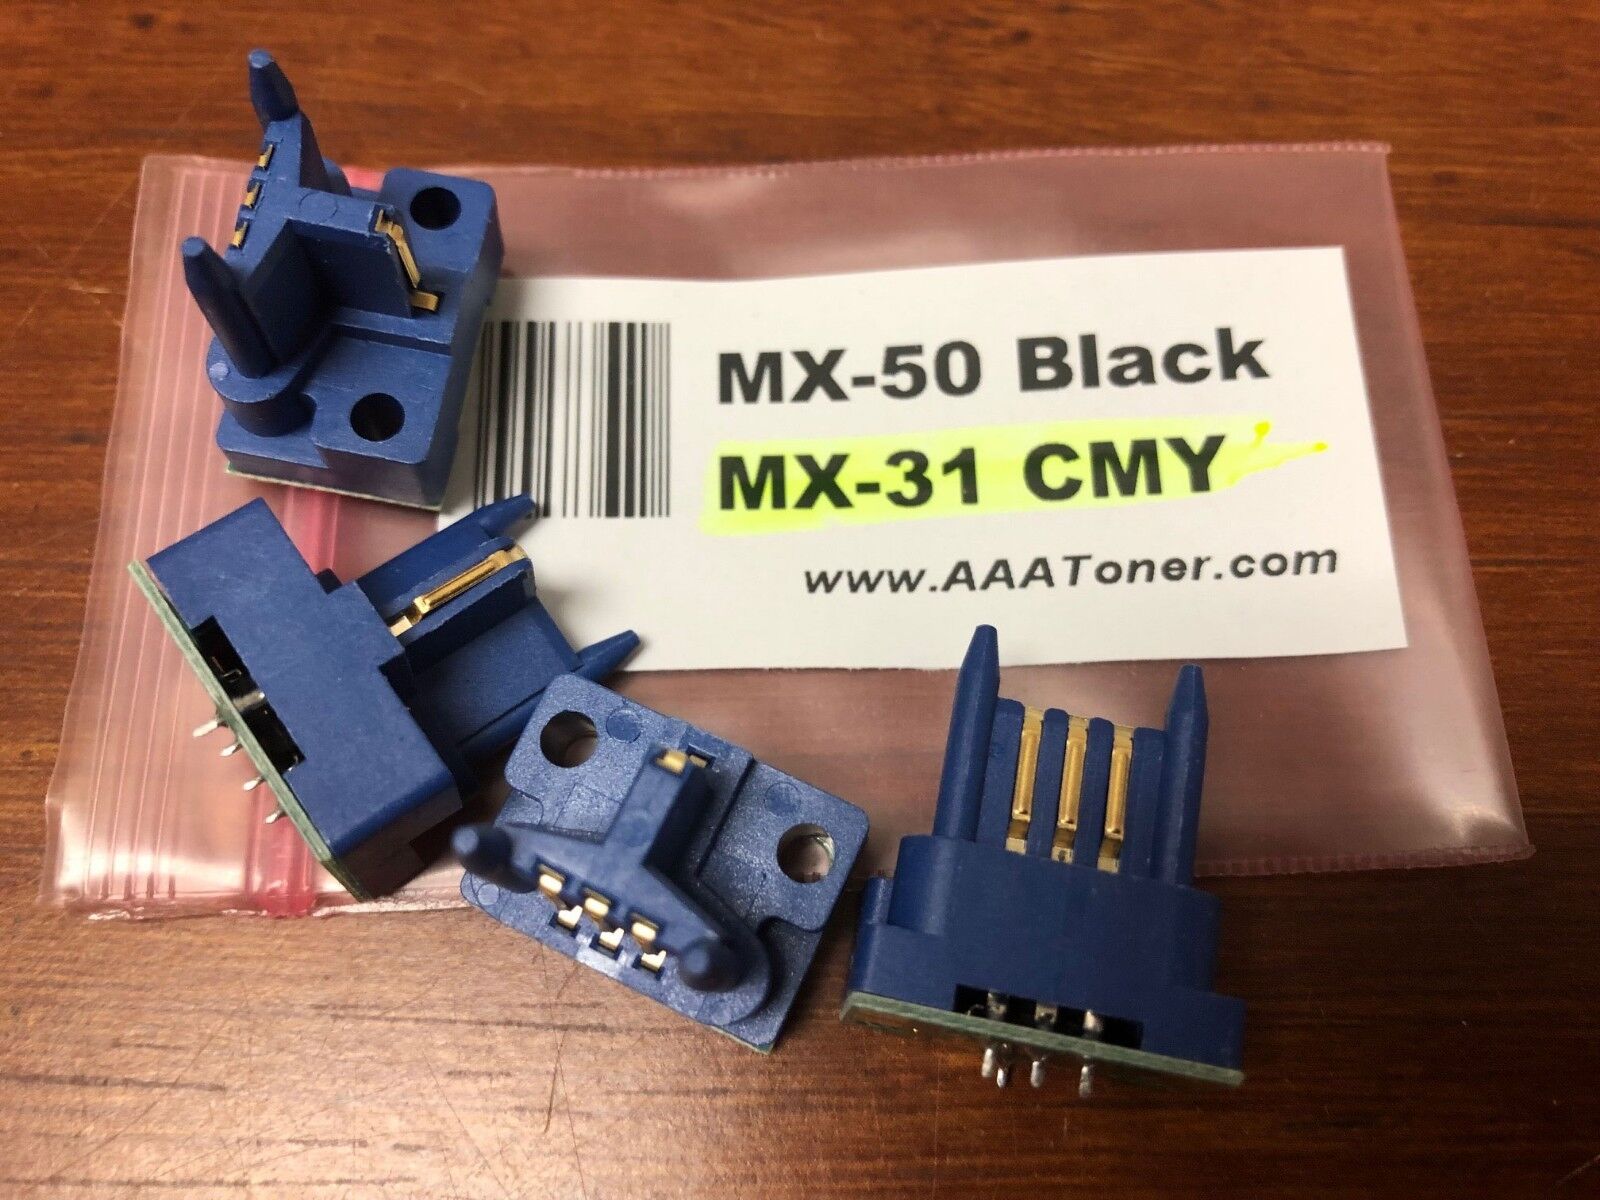 4 x Toner Reset Chip for Sharp MX-4100N, MX-4101N, MX-5000N, MX-5001N (MX-50)